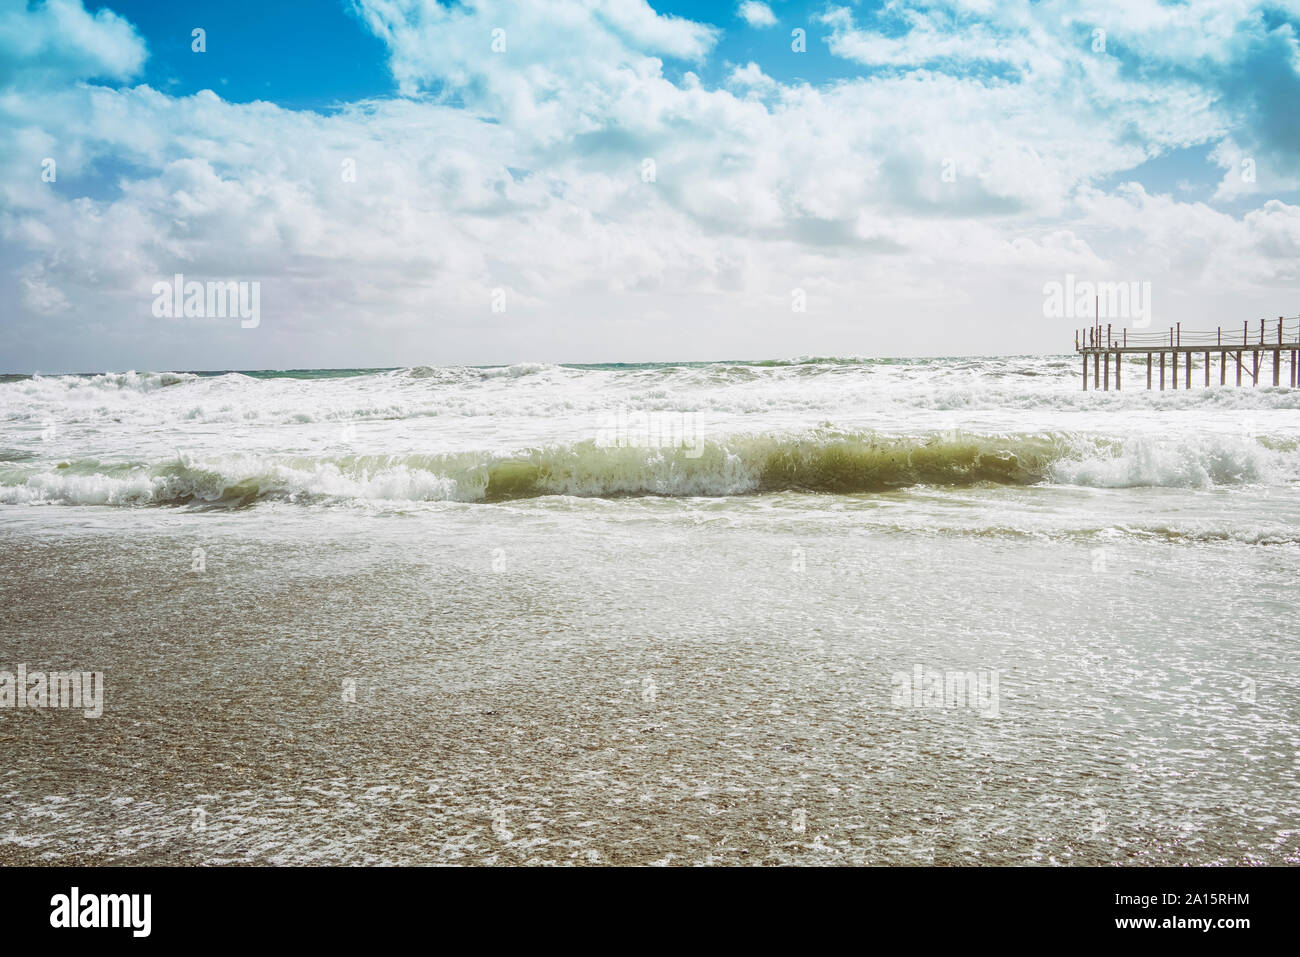 Mediterranean Sea at Alanya, Turkey Stock Photo